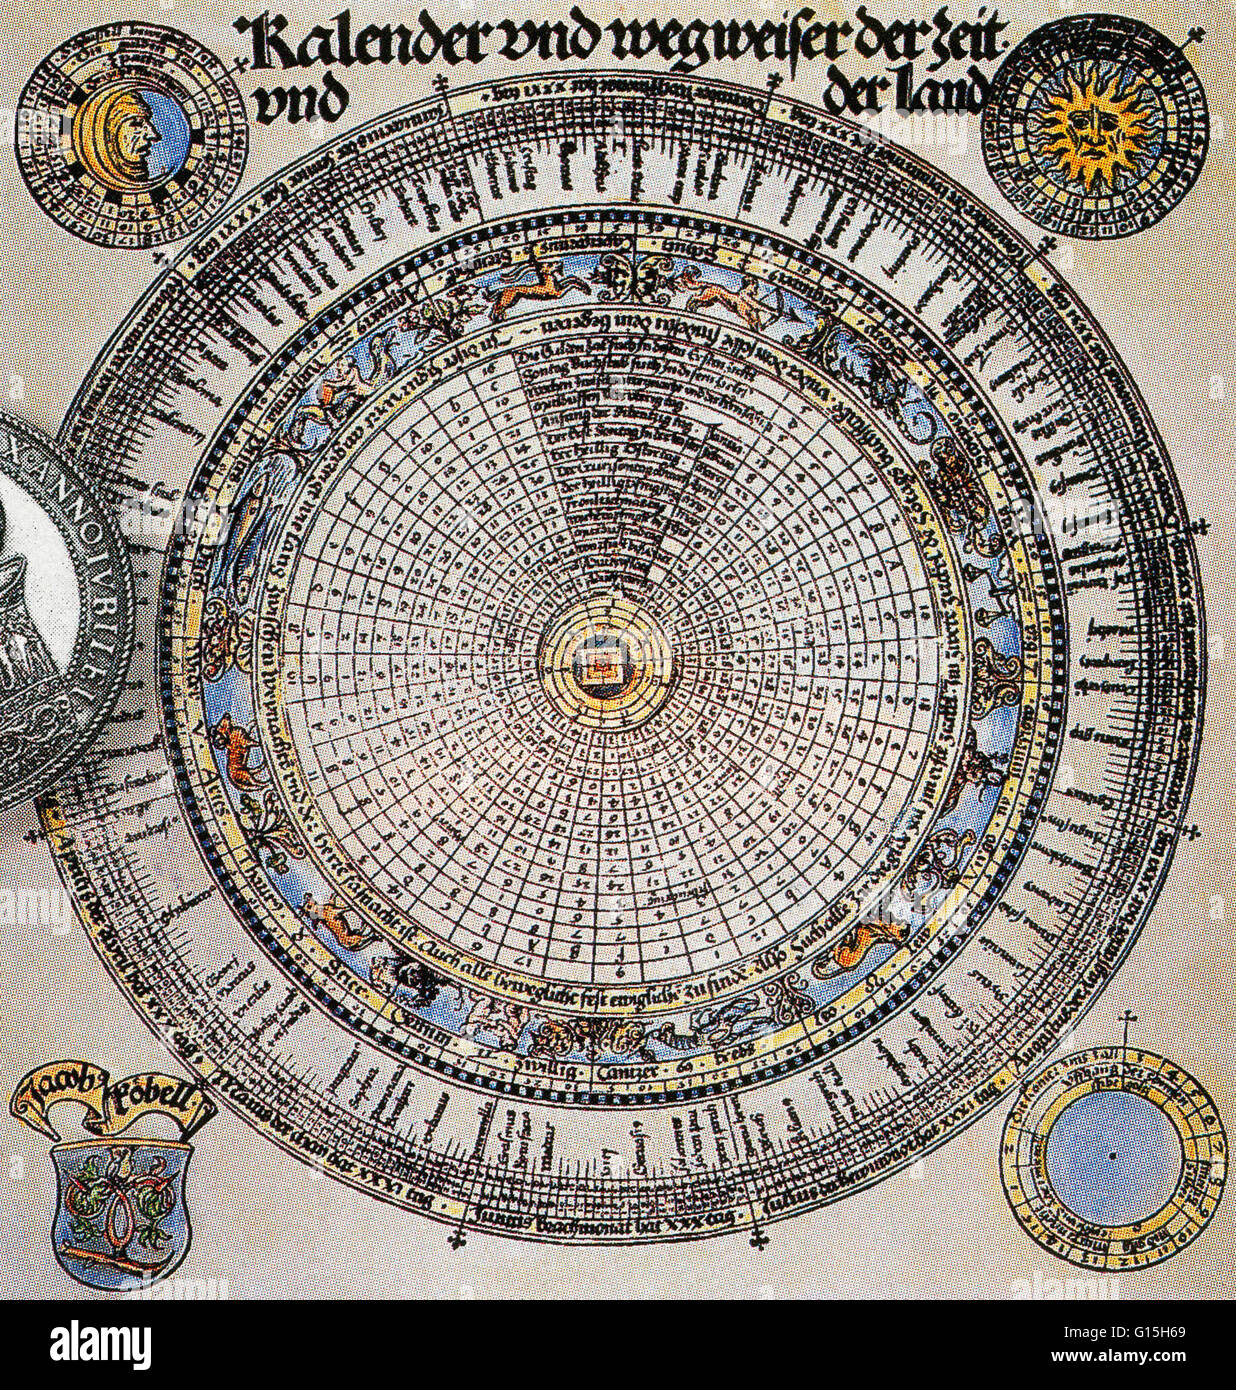 El calendario Gregoriano (calendario occidental, calendario cristiano) es el calendario solar en uso durante la mayor parte del mundo. Fue patrocinado por el Papa Gregorio XIII en 1582 como una versión corregida del calendario Juliano. El año ordinario se compone de 3 Foto de stock